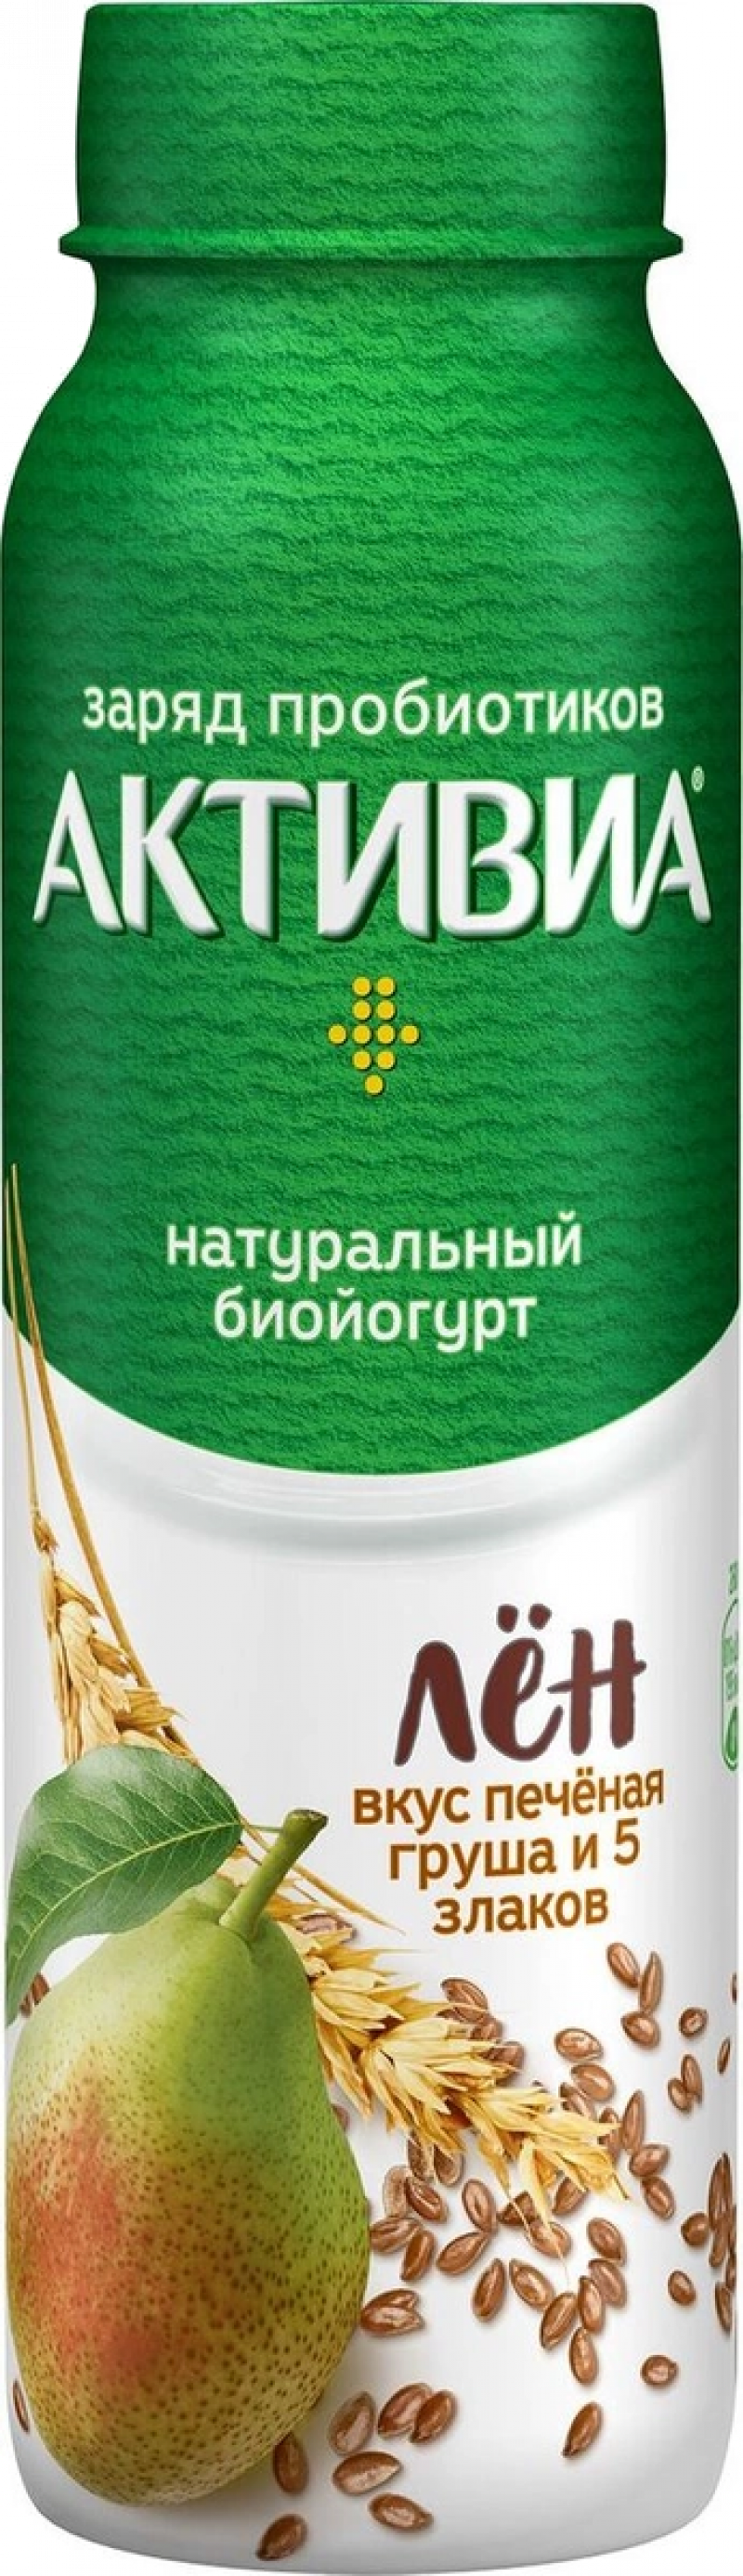 Биойогурт ТМ Активиа питьевой обогащенный Пёченая Груша-5 злаков-Льняные семена 2,1% 260г